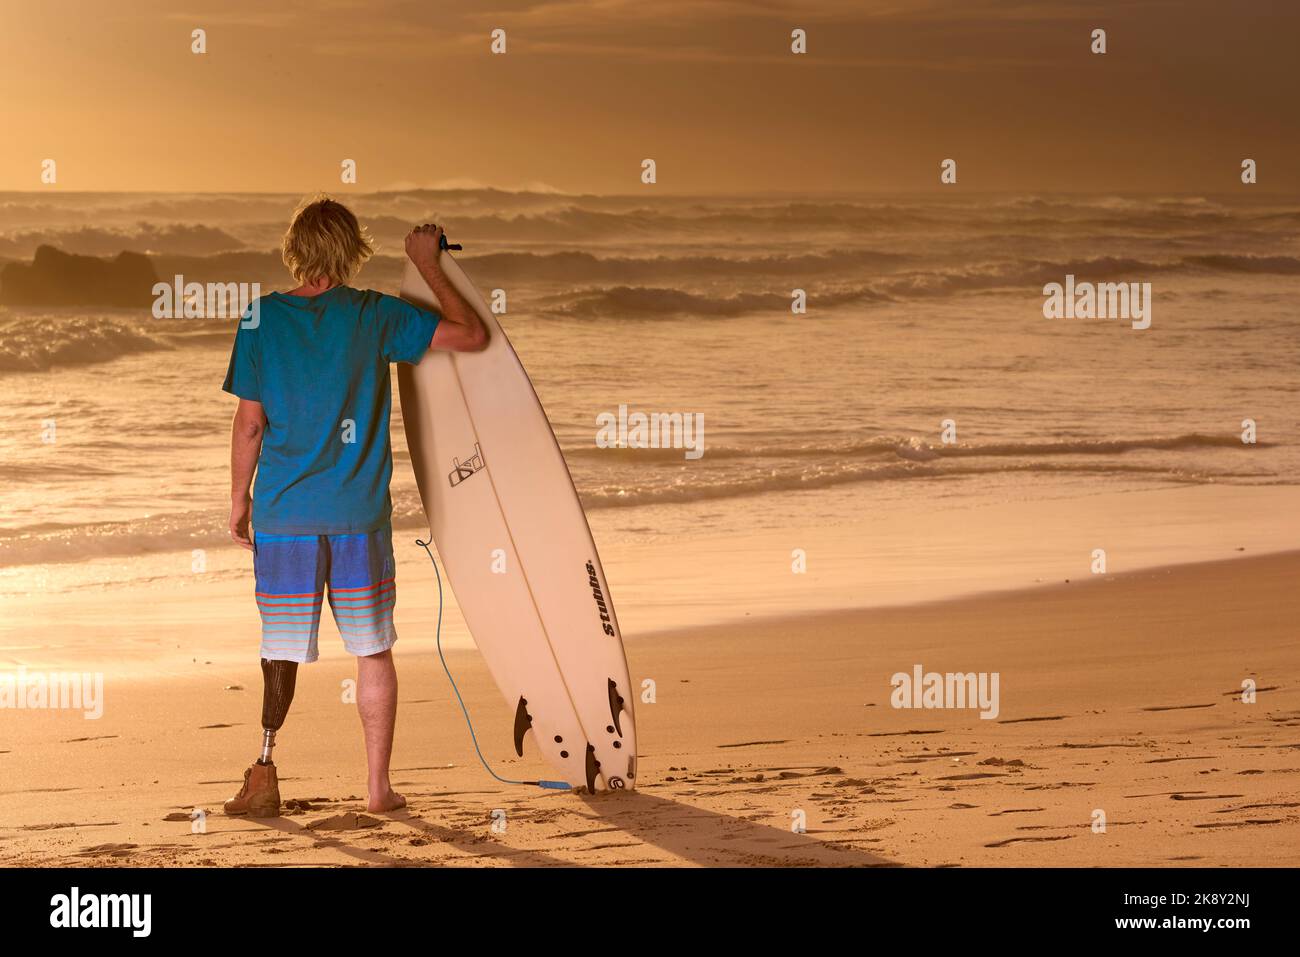 Une surfeuse handicapée à pattes portant une jambe prothétique sur la plage regardant les vagues Banque D'Images